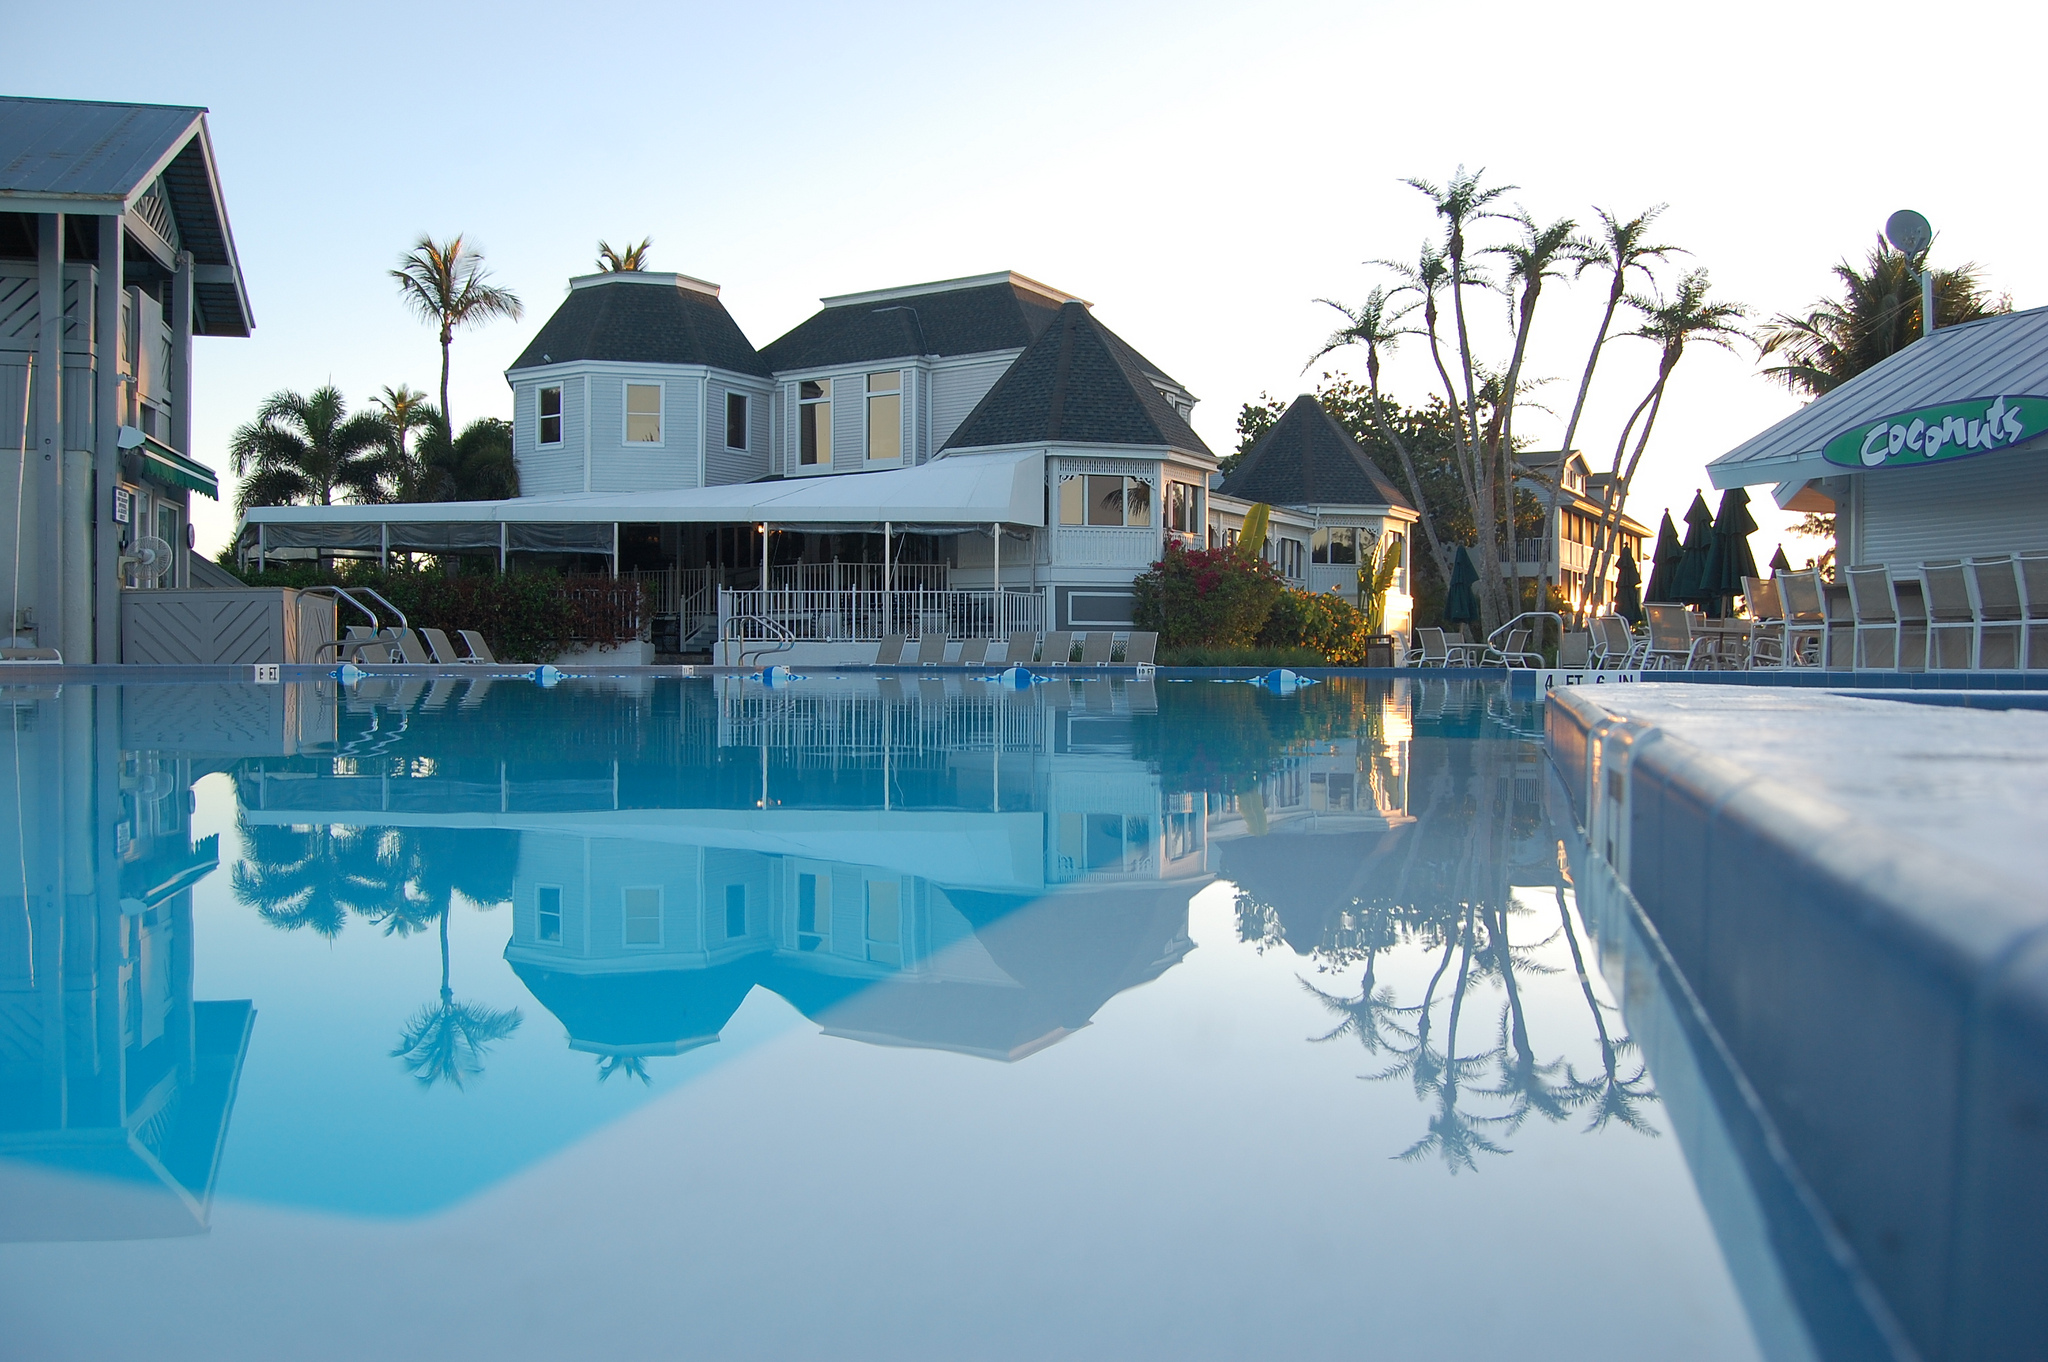 Casa Ybel Resort  RESORT SPOTLIGHT by Vacation Club Loans